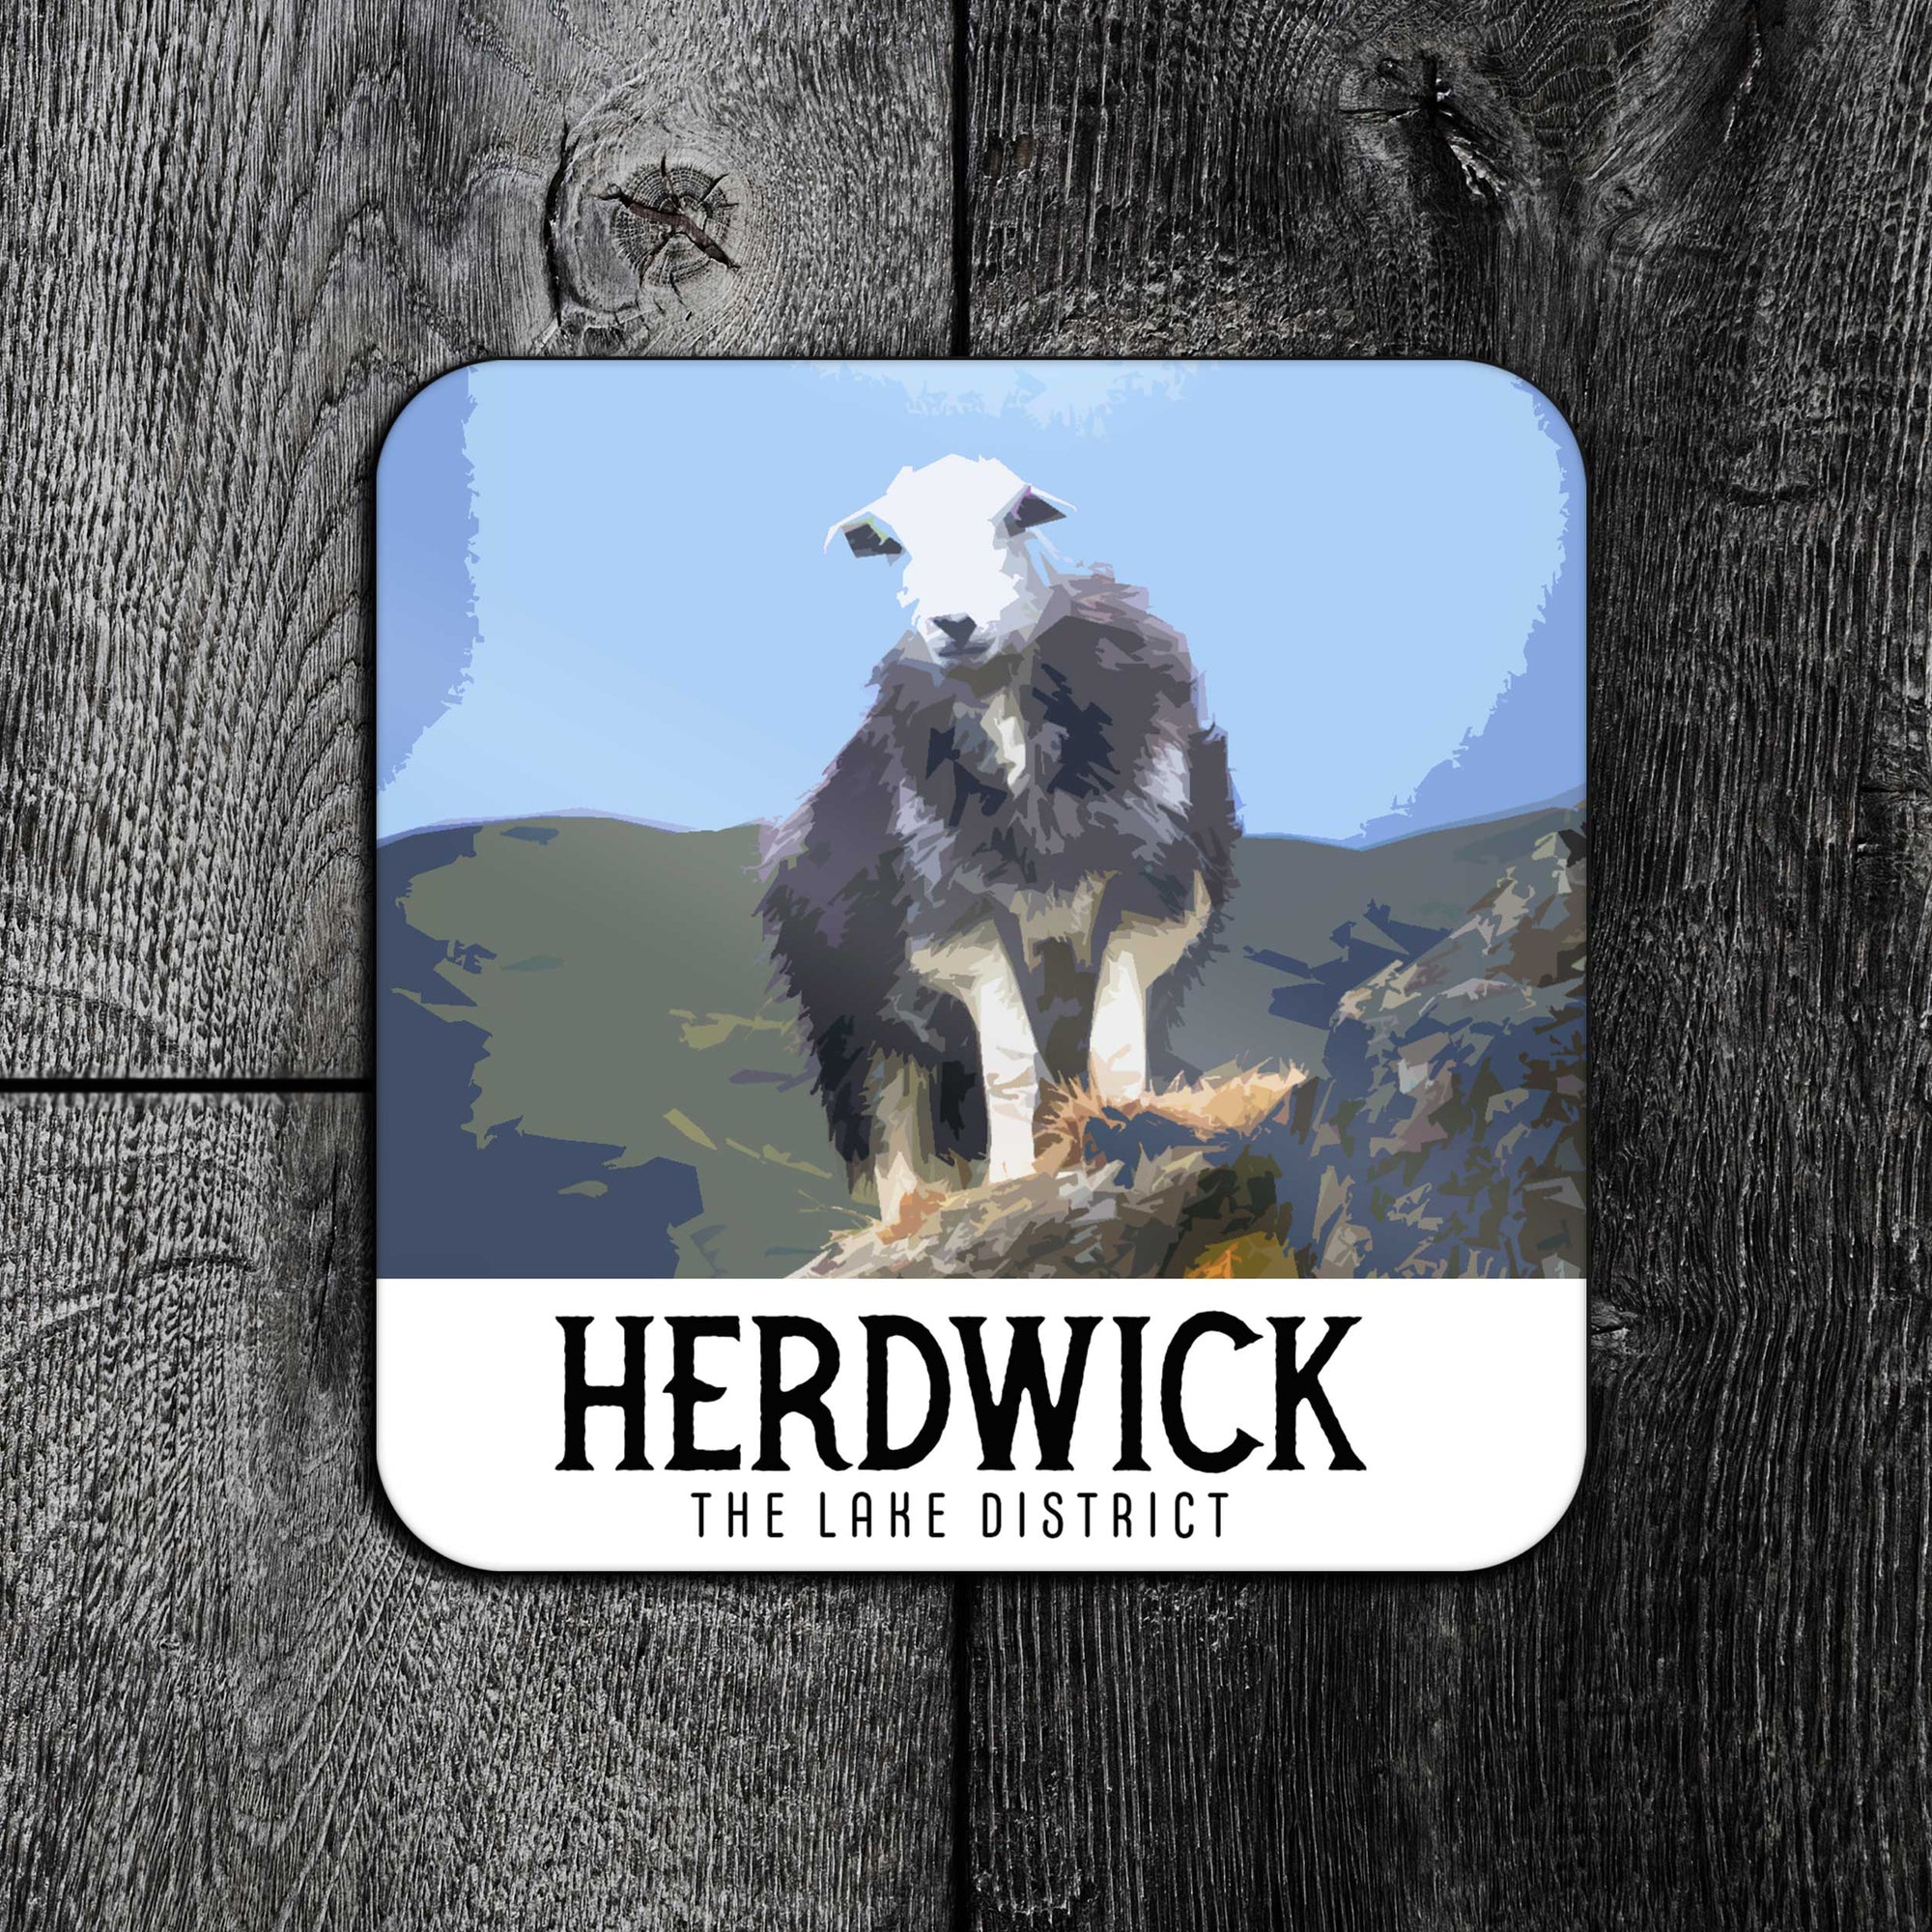 Herdwick Sheep Vintage Travel Poster Coaster - Lake District